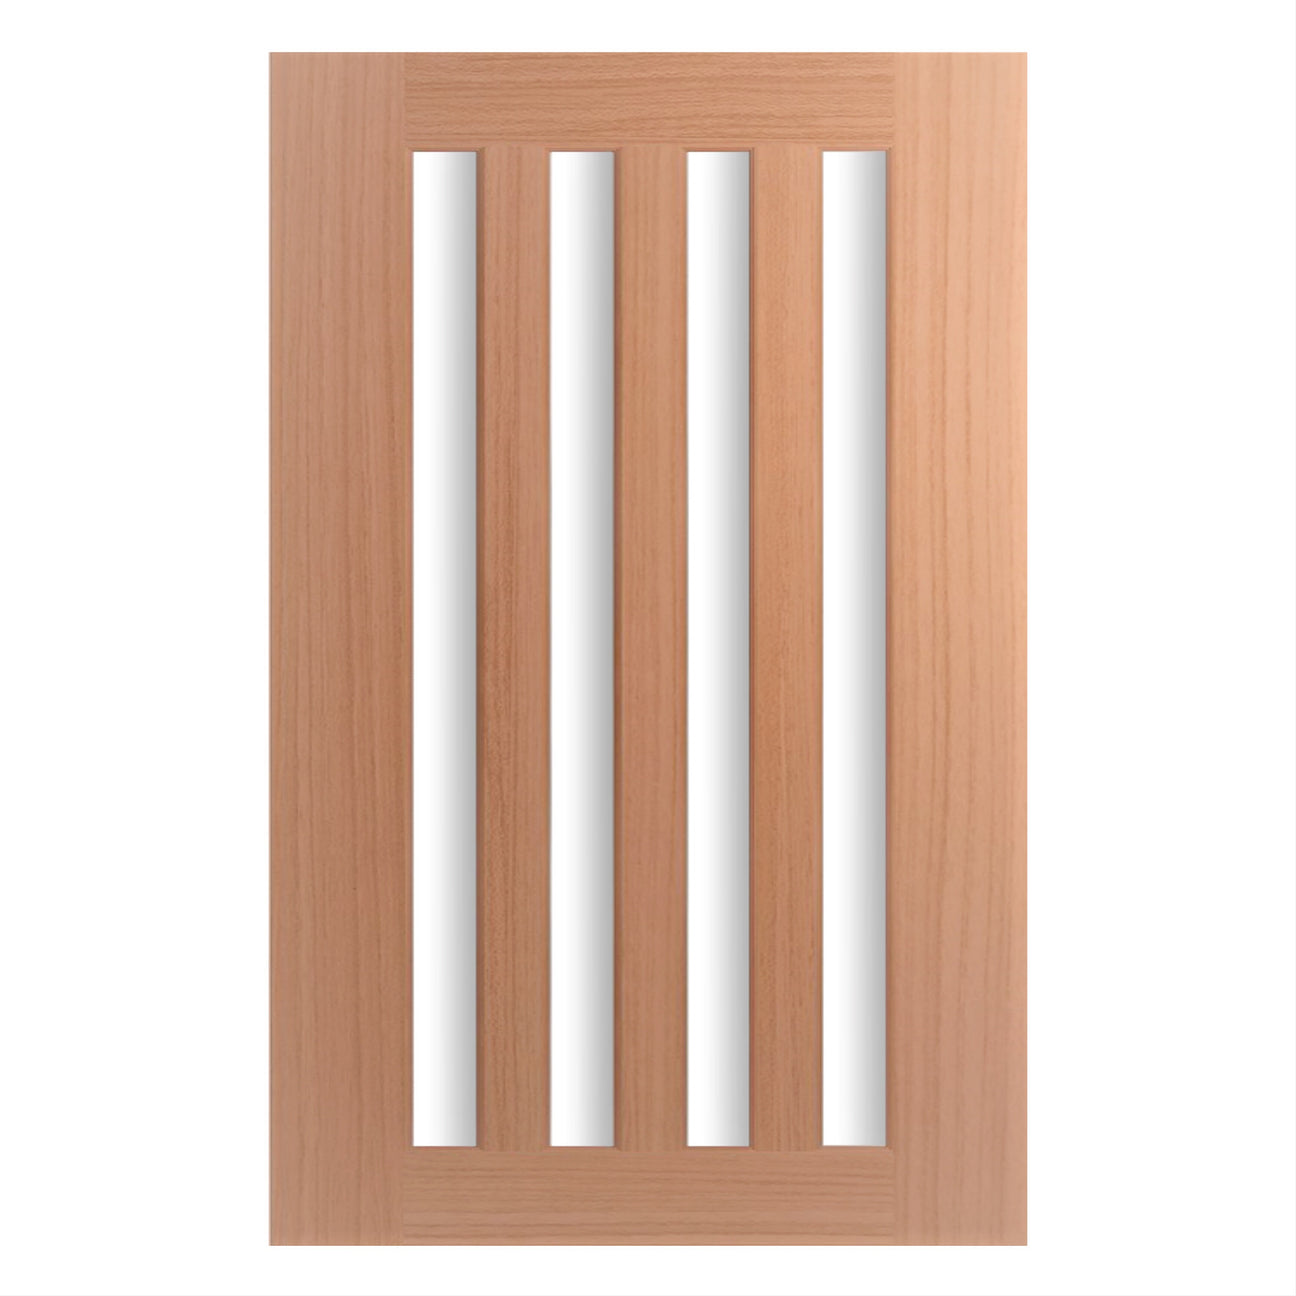 All Timber Doors